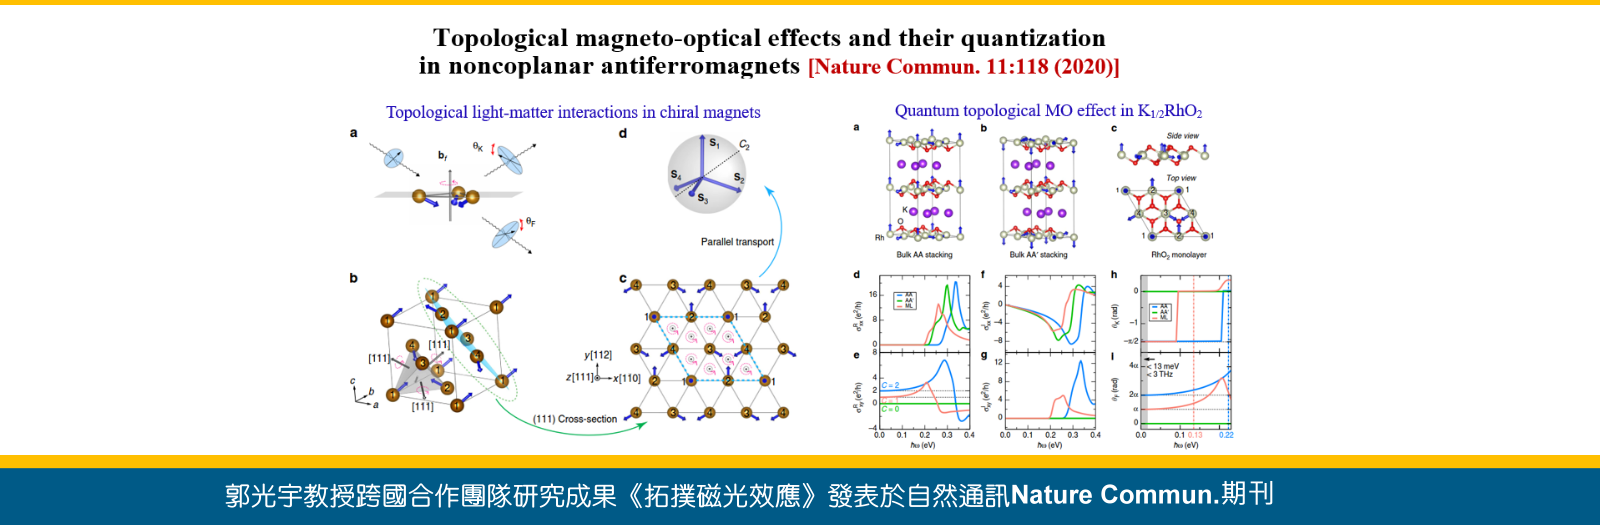 郭光宇教授跨國合作團隊研究成果《拓撲磁光效應》發表於自然通訊Nature Comm期刊